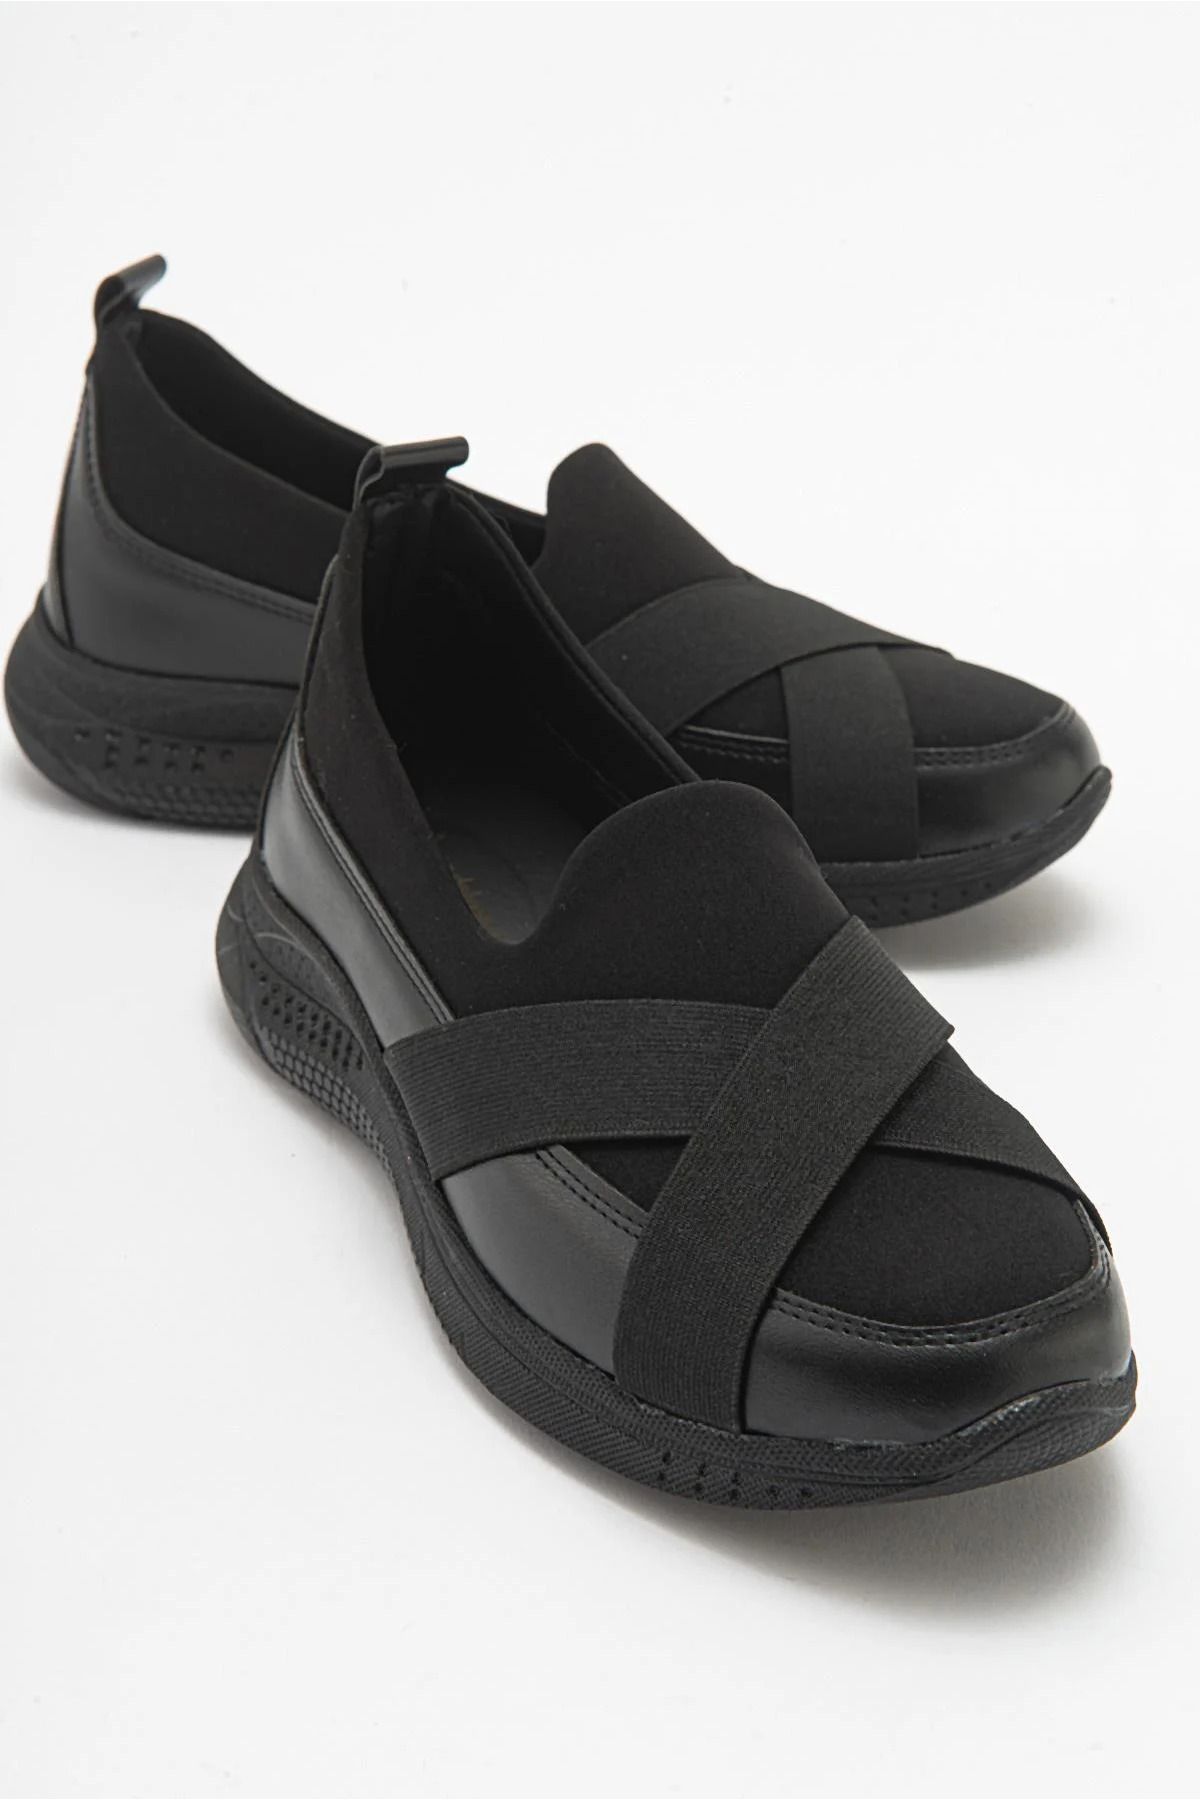 ayakkabıhavuzu Siyah Cilt Streç Kadın Hafif Taban Rahat Ortopedik Babet Ayakkabı